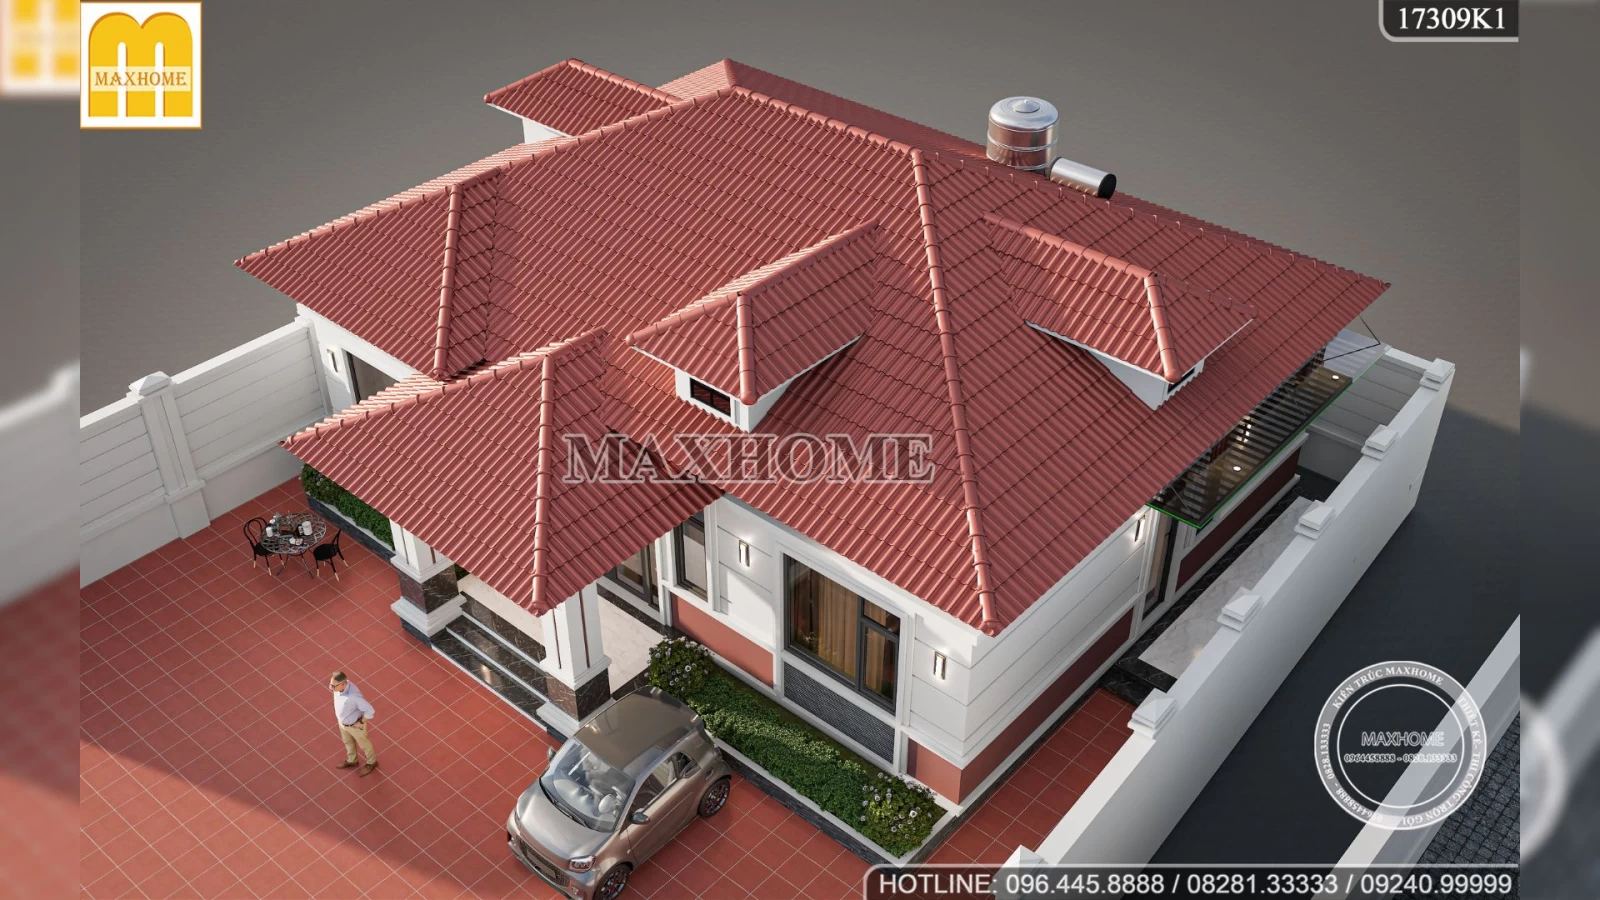 MUA THIẾT KẾ nhà 1 tầng ngói đỏ đẹp mê ly nổi bật nhất giá rẻ | MH02653